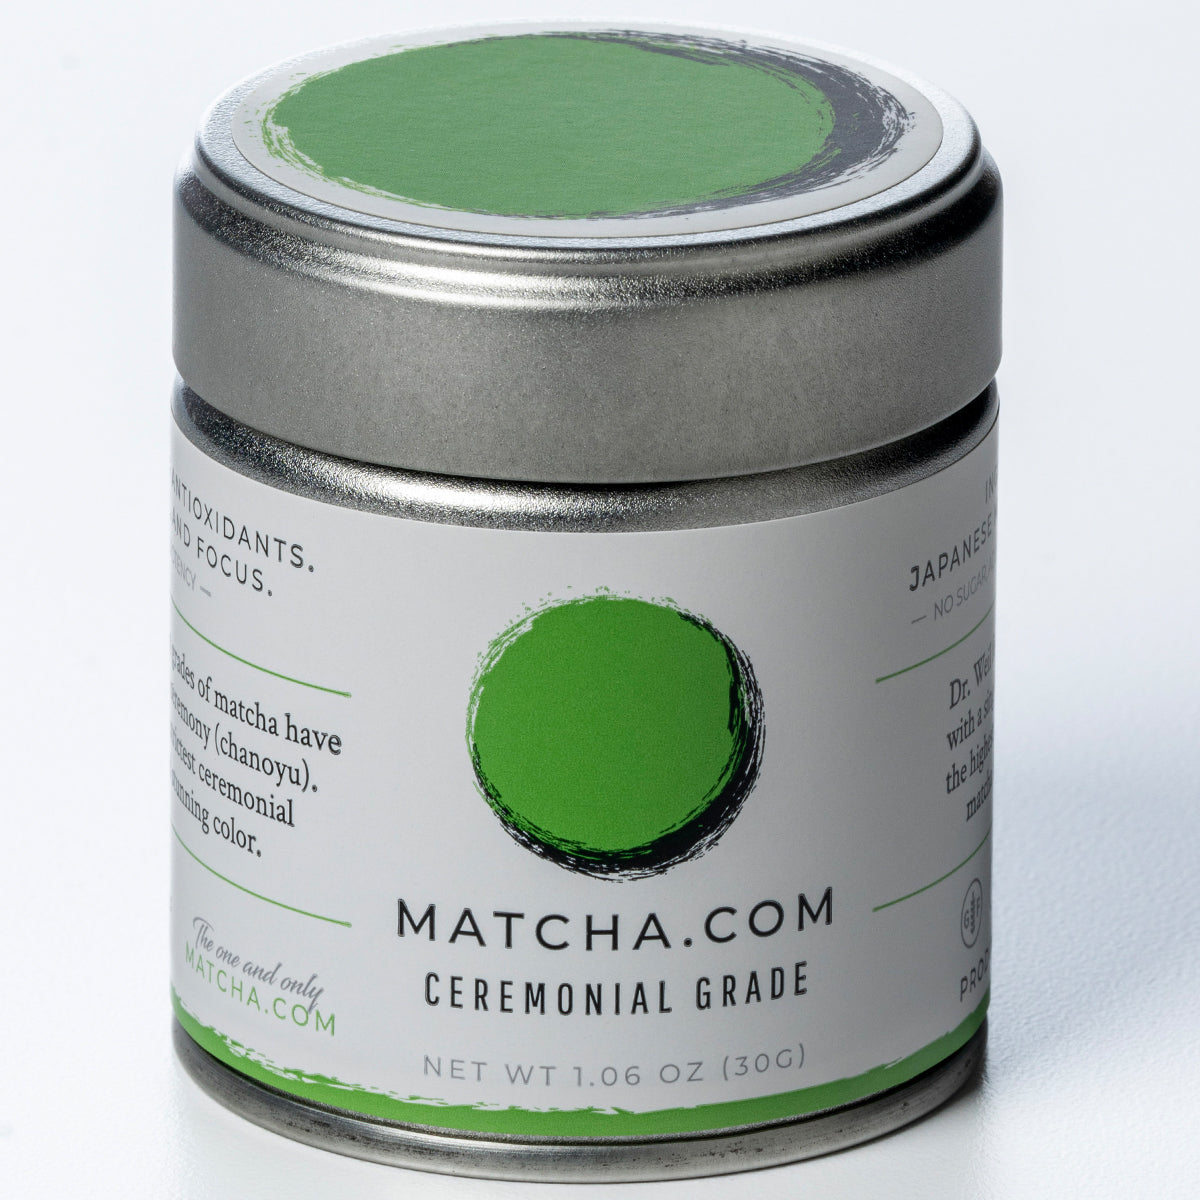 Comprar Té Matcha Premium 100% Ecológico Grado Ceremonial. Matcha & CO